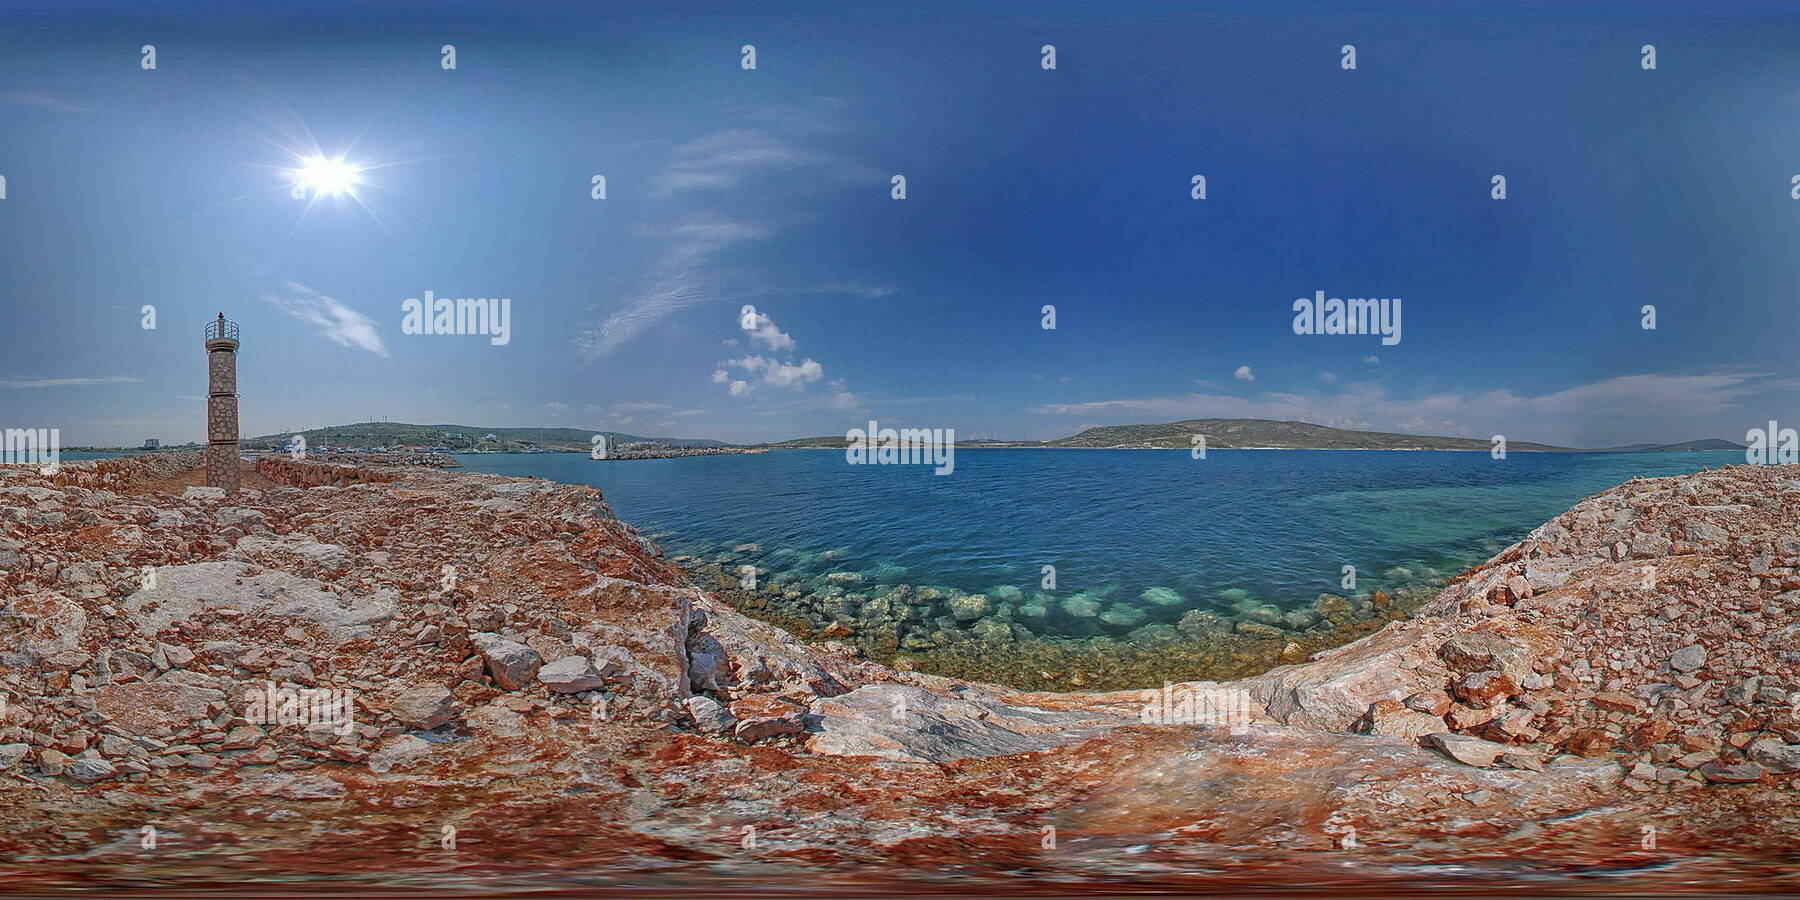 Vista panorámica en 360 grados de Alacati